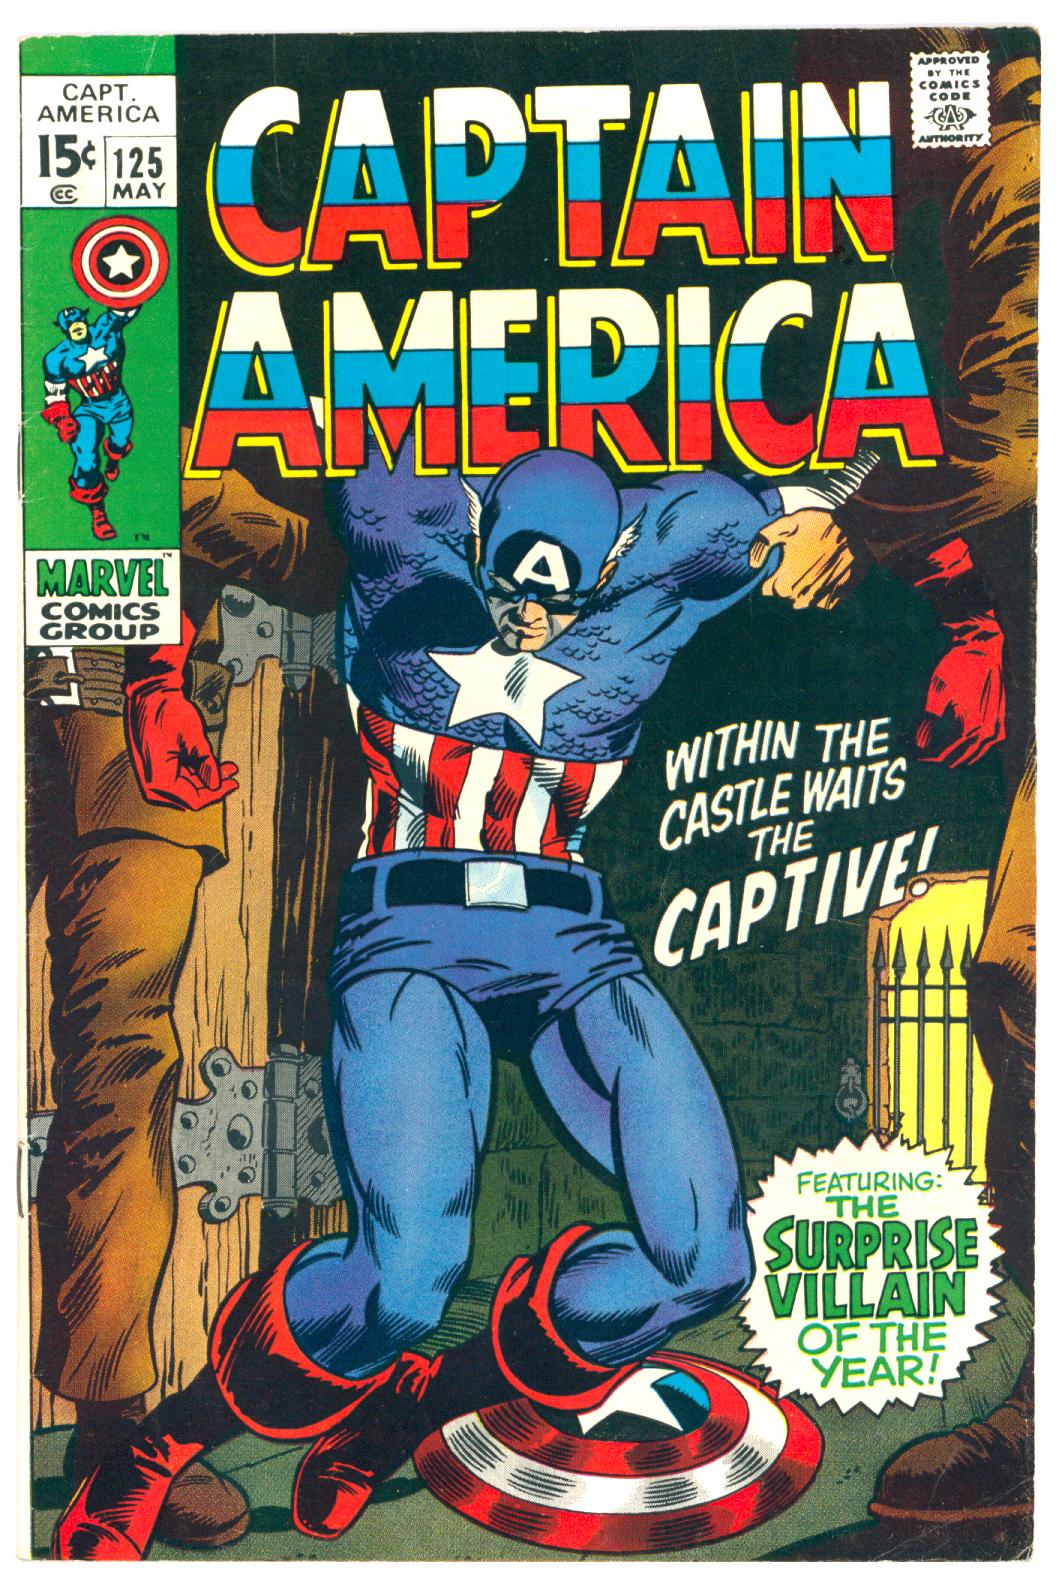 Captain America #125